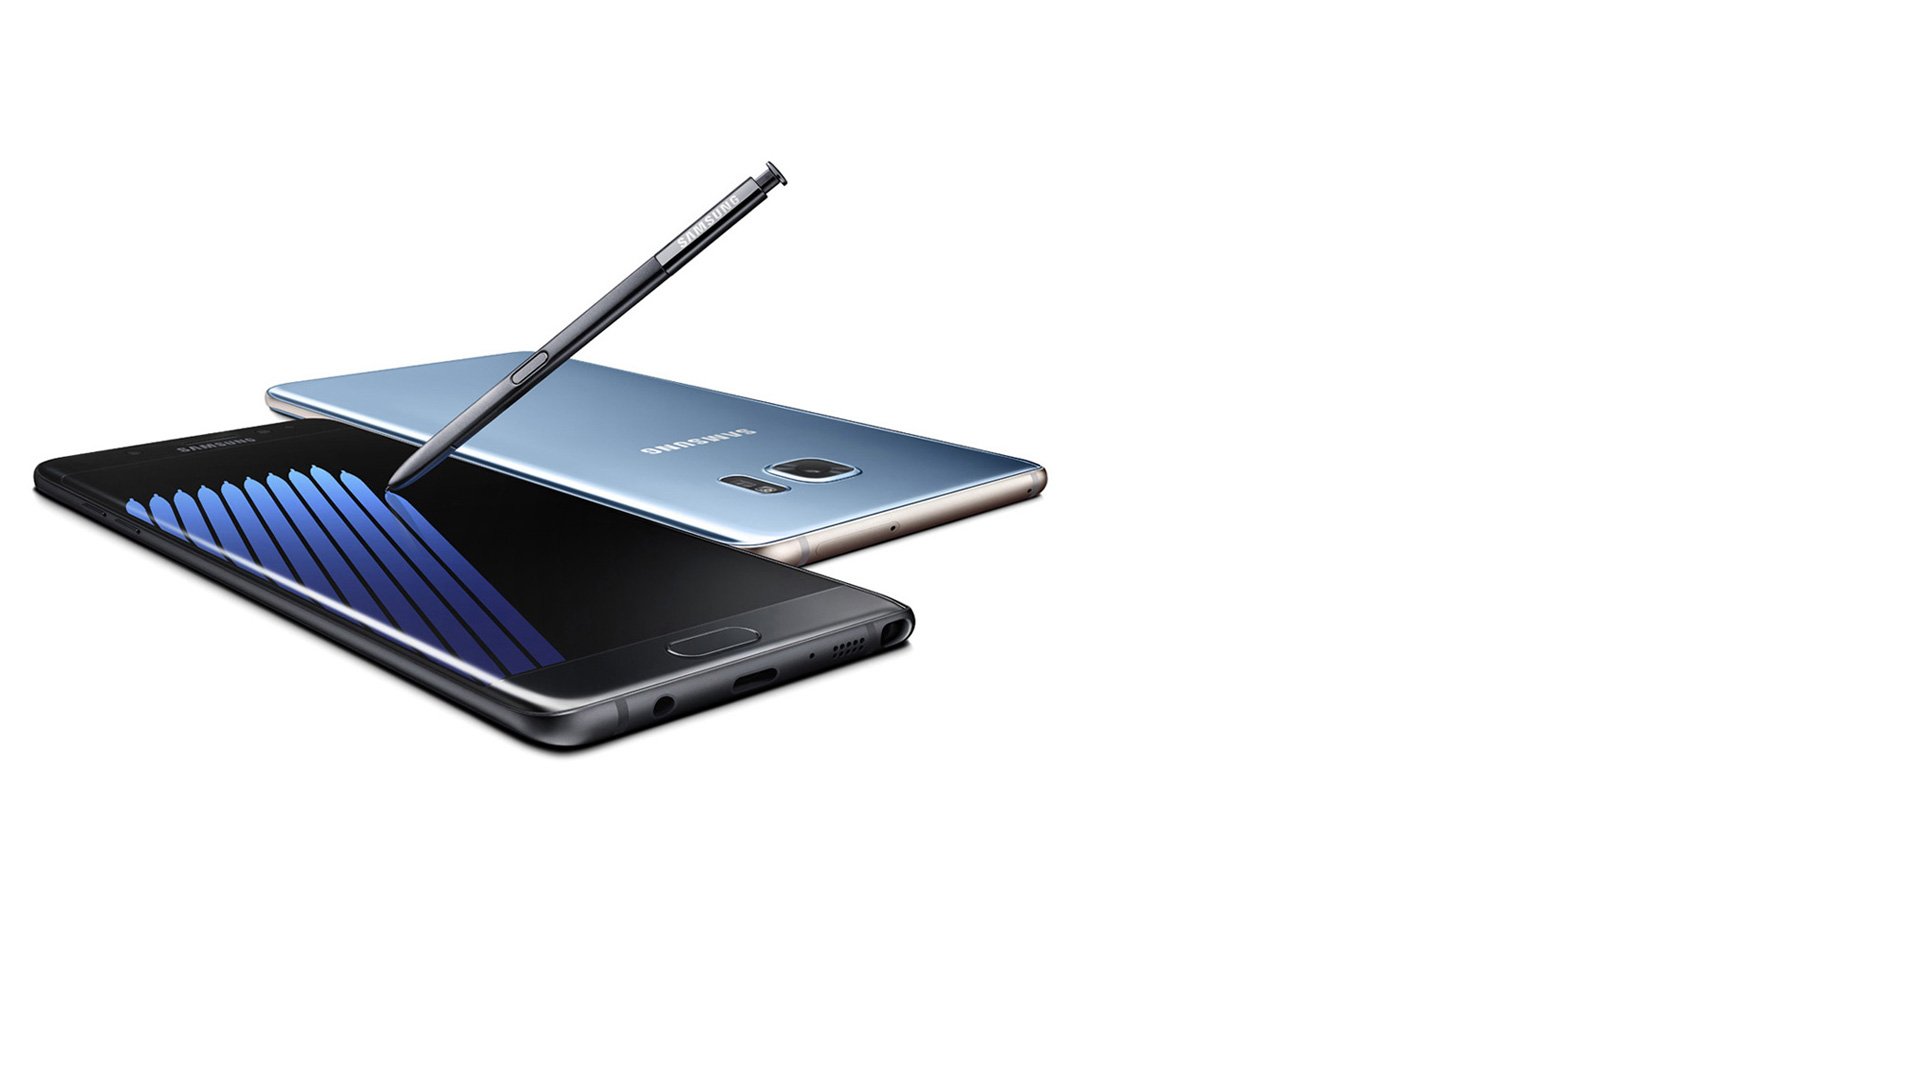 Samsung Galaxy Note 7: Display nimmt leichter Schaden als iPhones 1